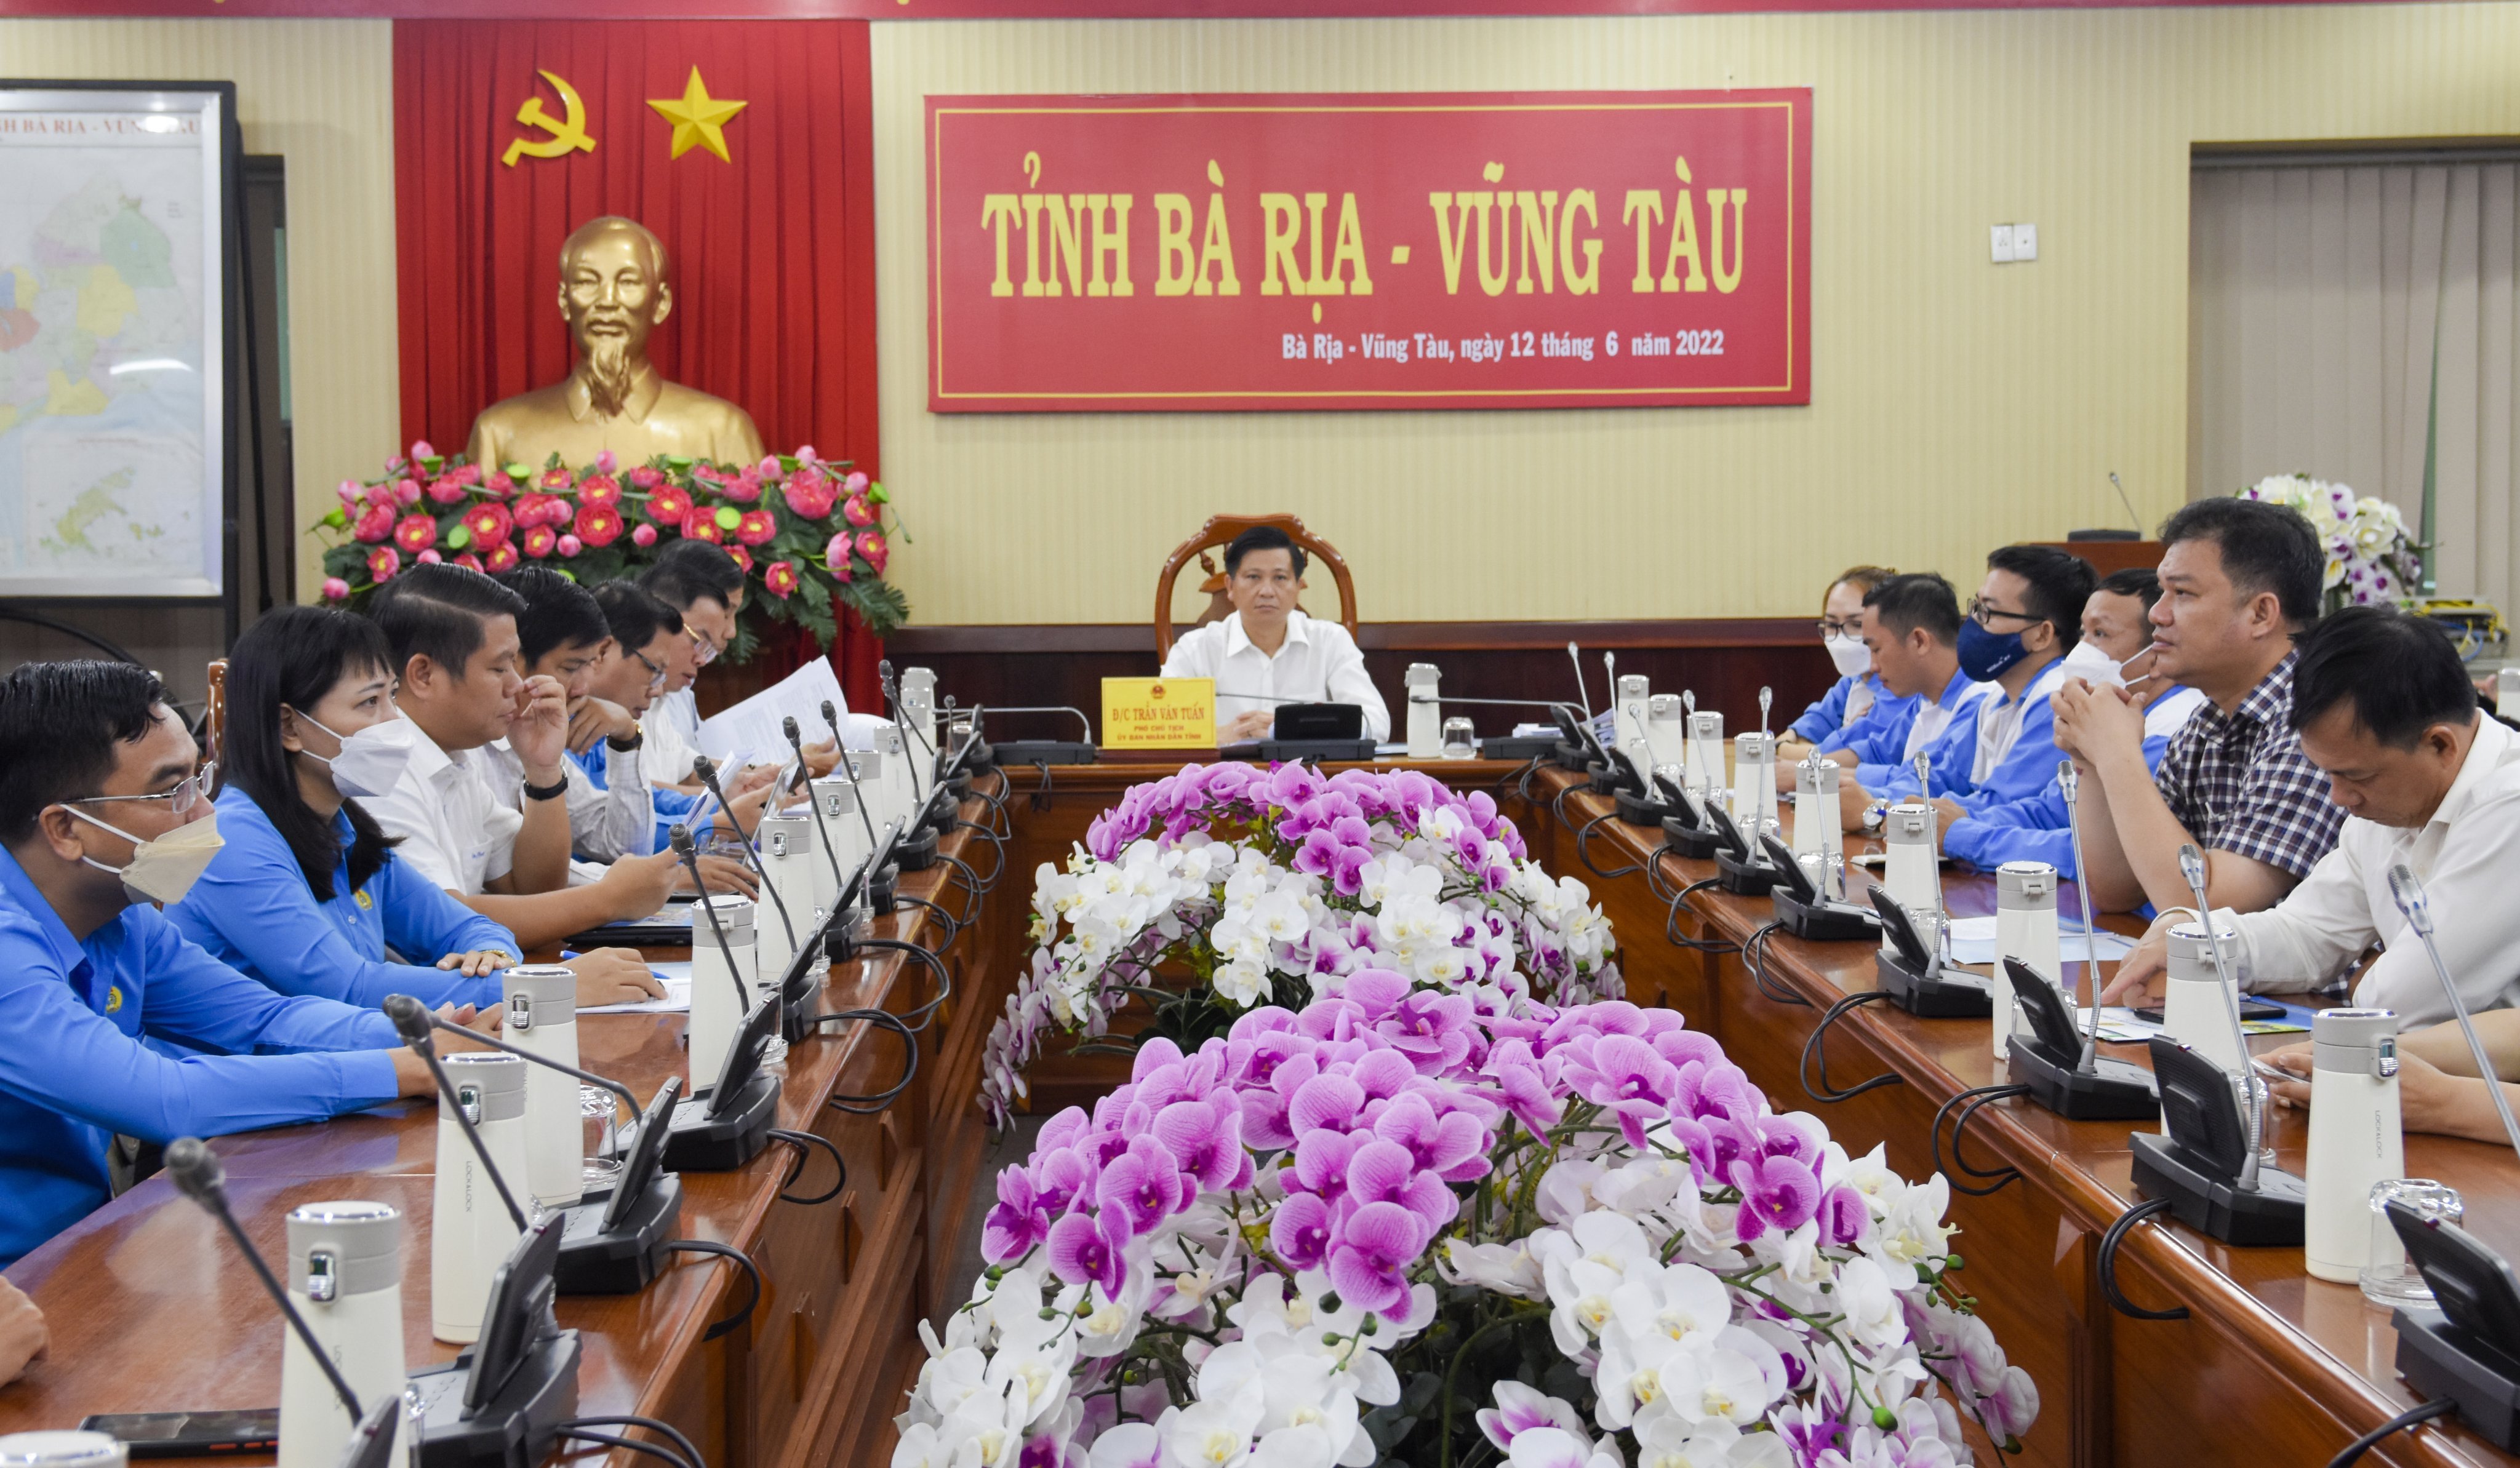 Ông Trần Văn Tuấn, Phó Chủ tịch UBND tỉnh và đại diện lãnh đạo các sở, ngành và CNLĐ dự buổi đối thoại tại điểm cầu Bà Rịa-Vũng Tàu.  